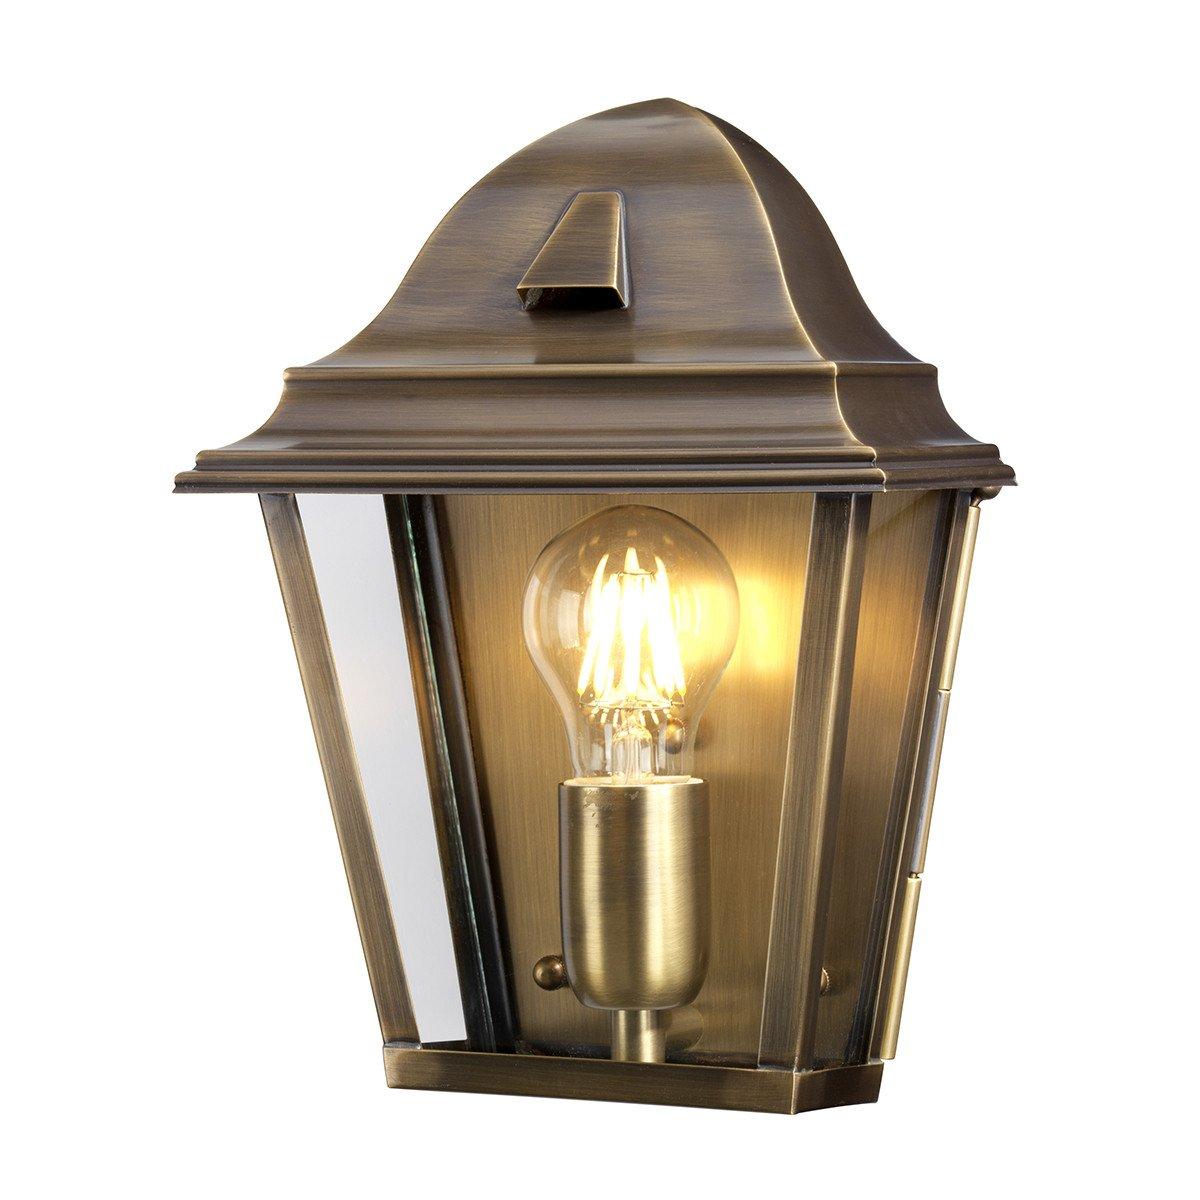 St James 1 Light Outdoor Wall Lantern Light Solid Brass IP44 E27